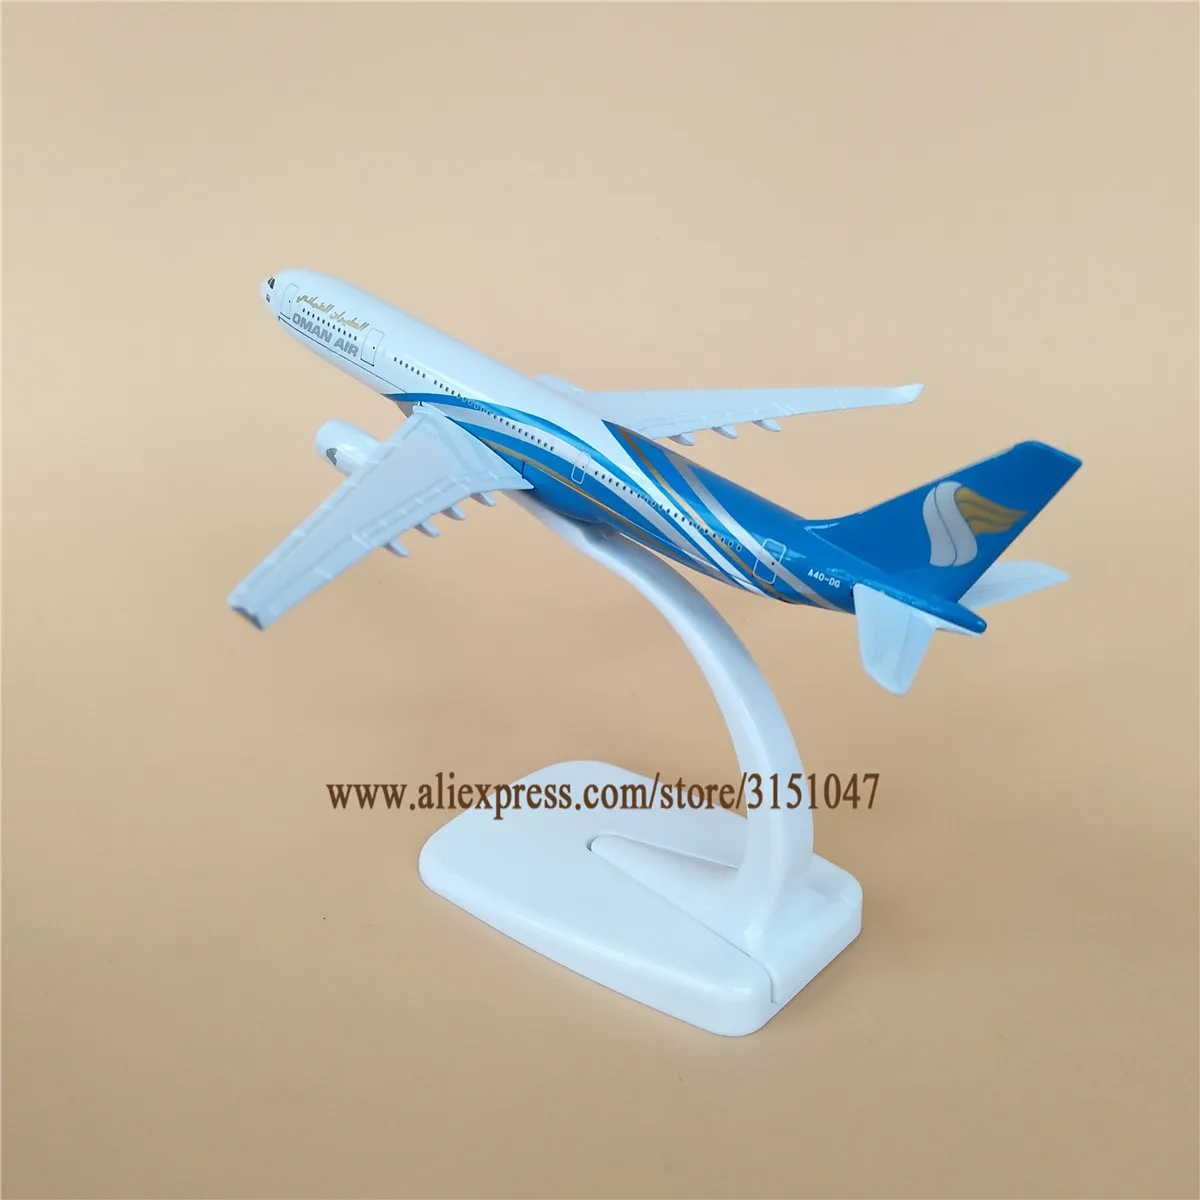 Сплав металла Oman Air Airlines модель самолета Airbus 330 A330 Airways модель самолета Стенд самолет детские подарки 16 см